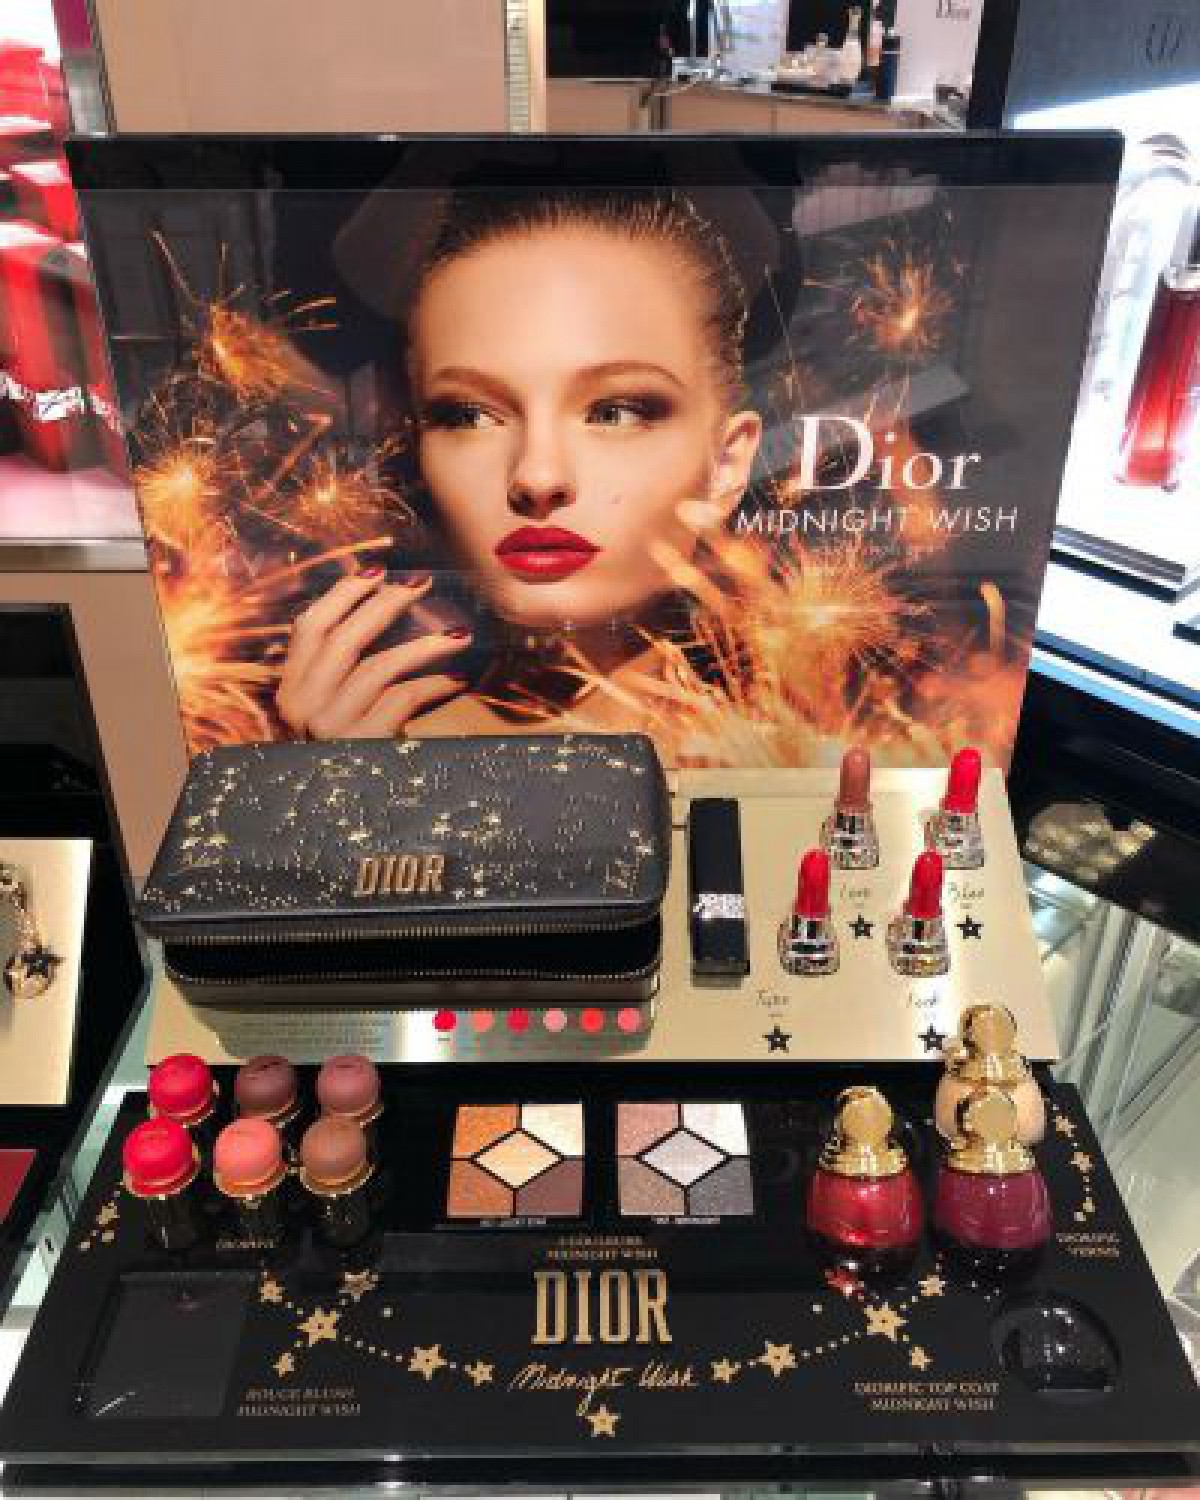 【クリスマスコフレ2018】散りばめられた星に願いを込めて…Dior(ディオール)のクリスマス限定コスメ情報